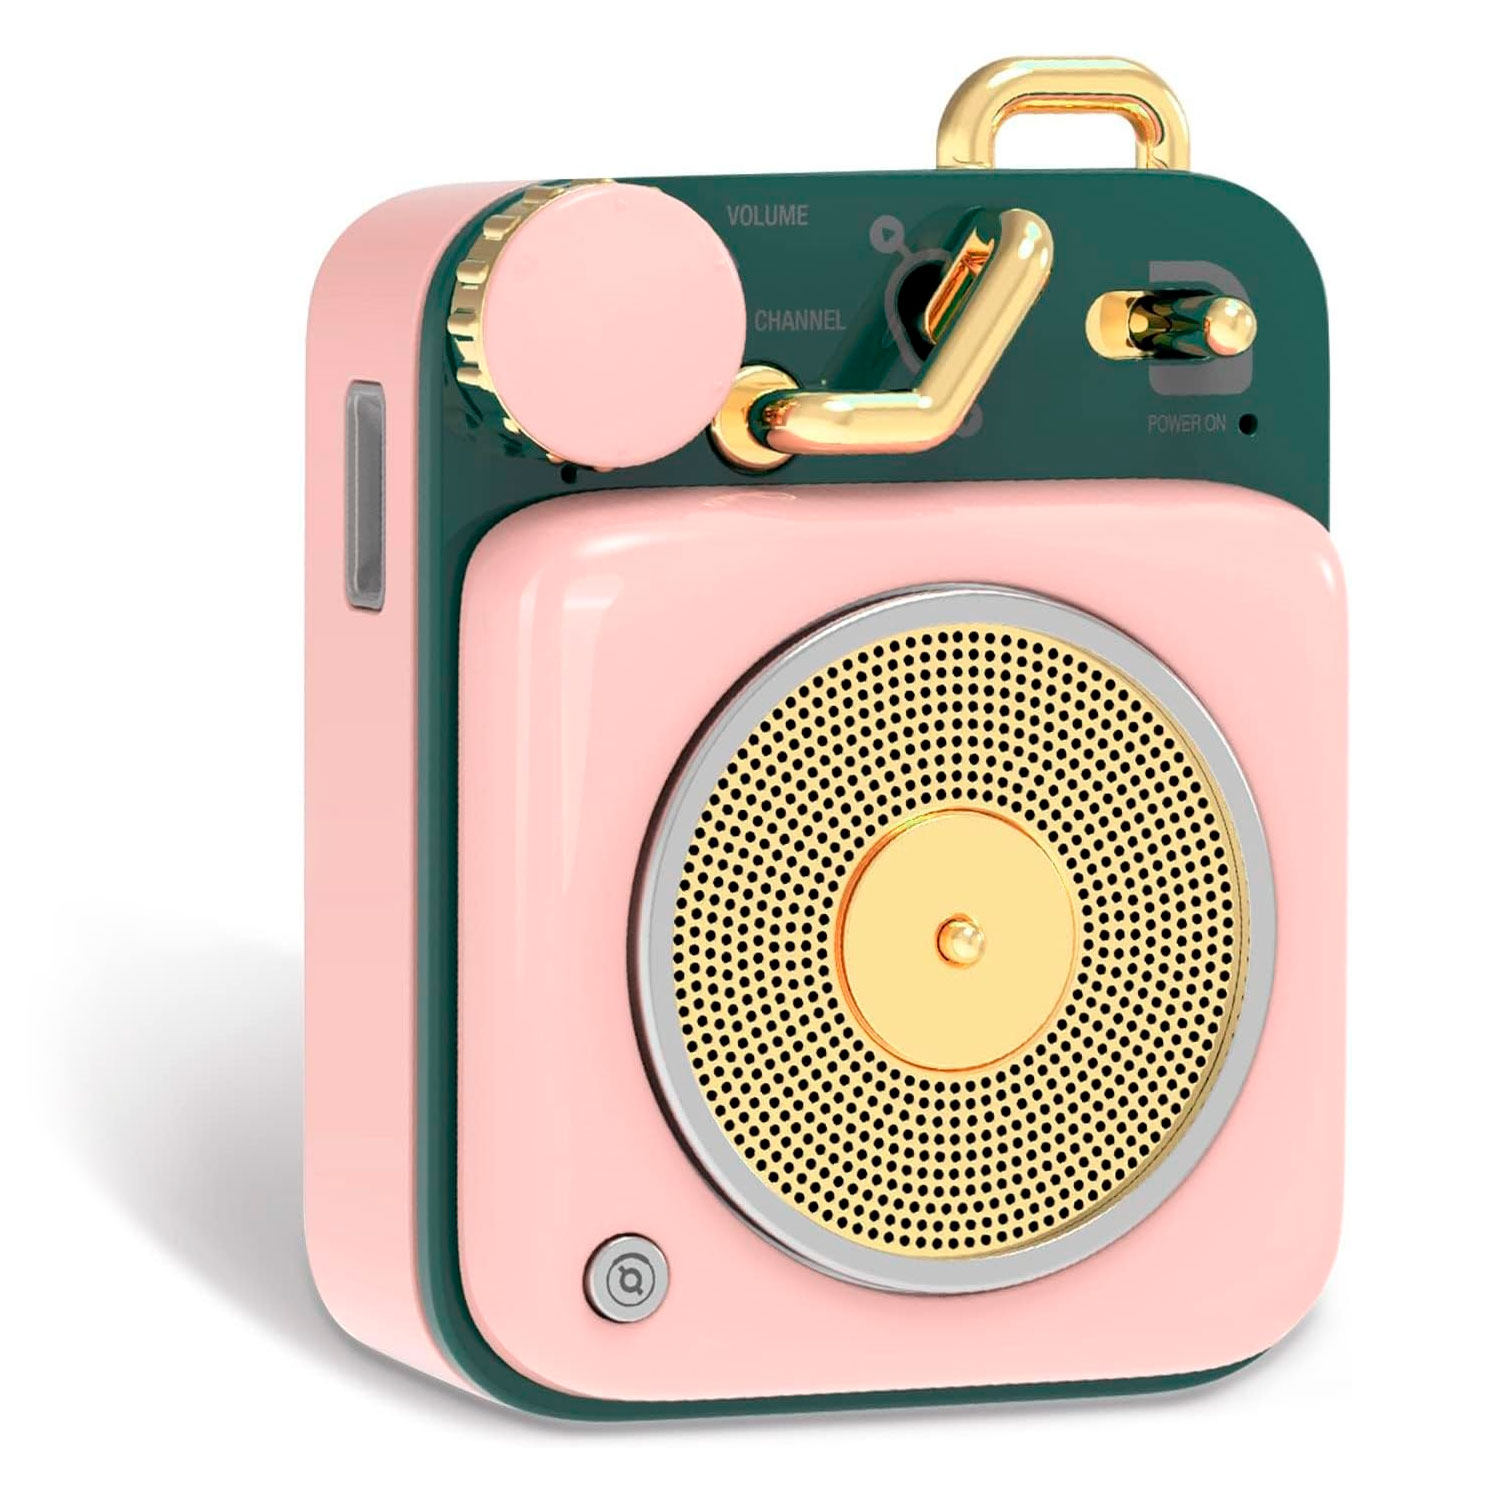 Caixa de Som Portátil Muzen Mini Button - Rosa